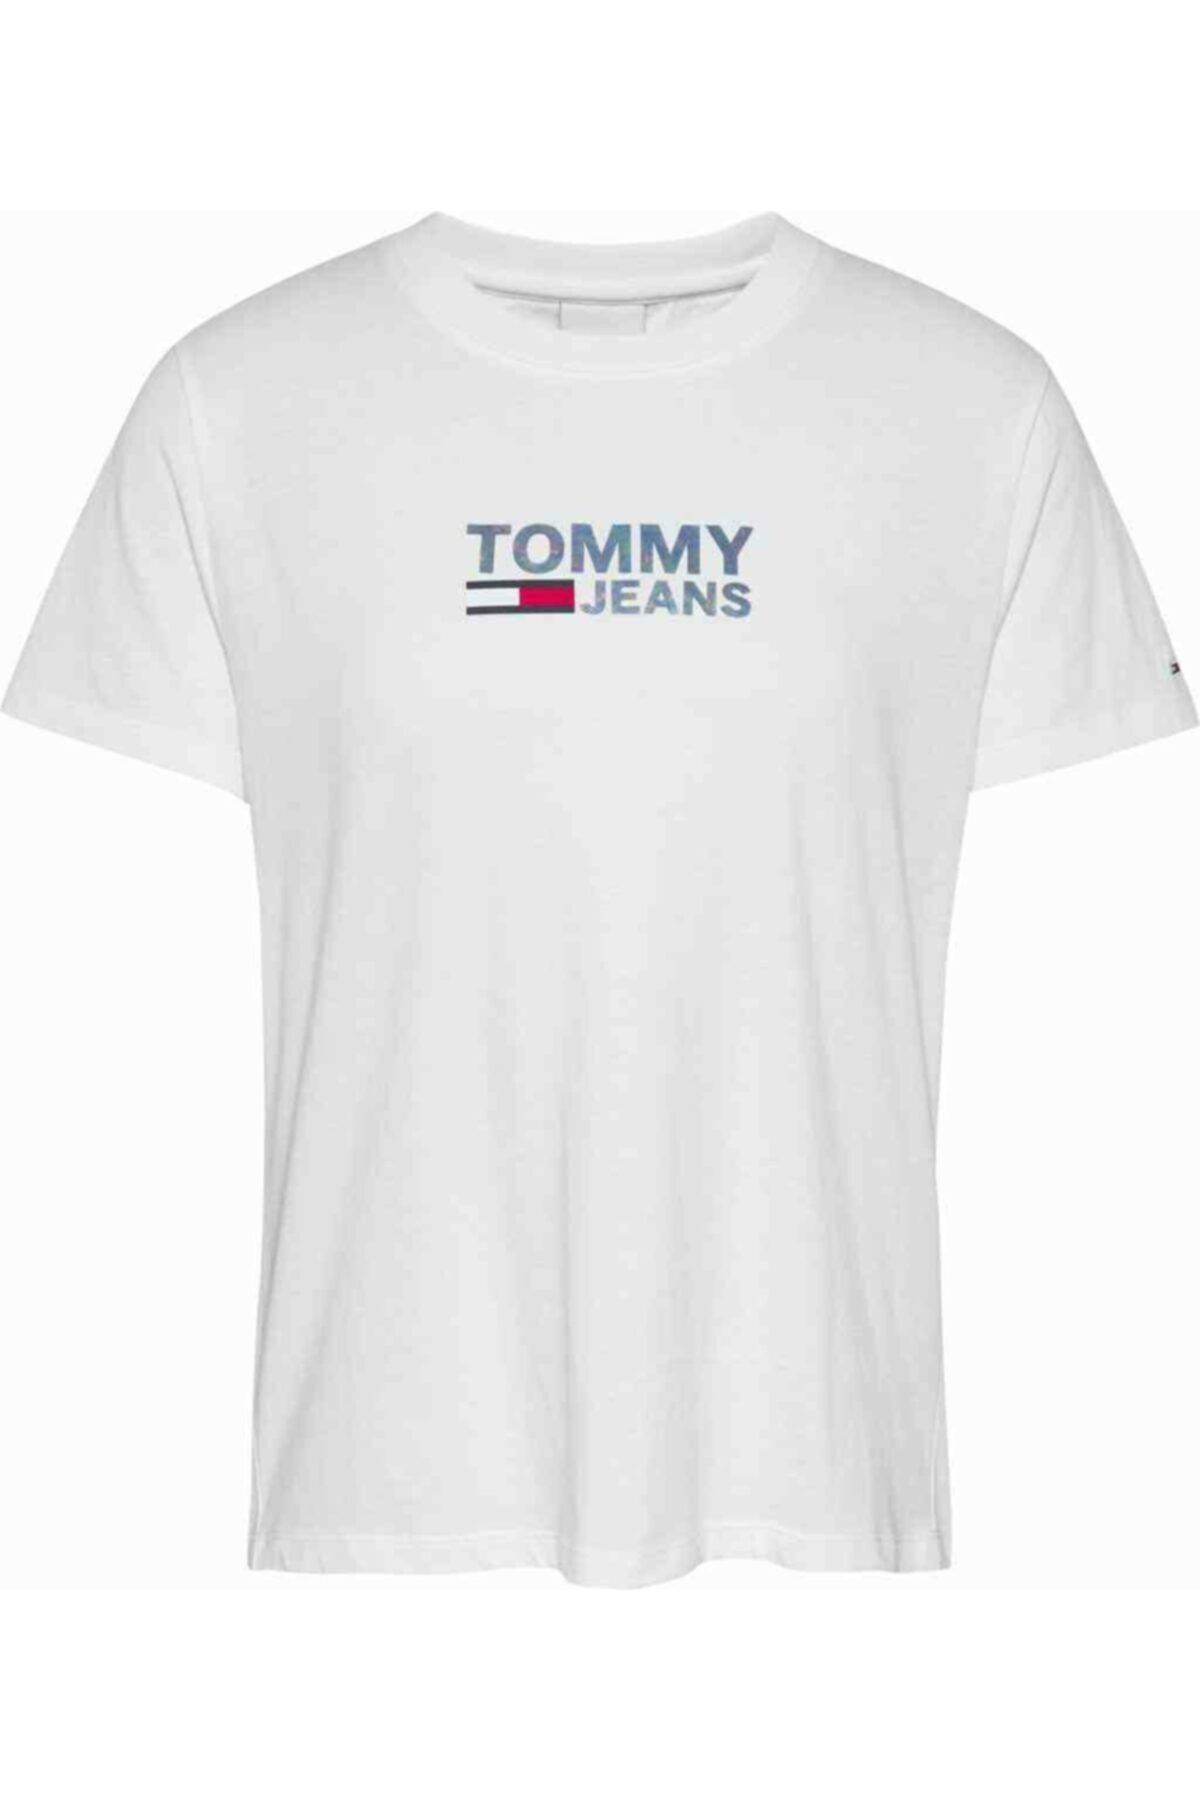 Tommy Hilfiger Tjw Reg Metallic Corp Logo T-shirt